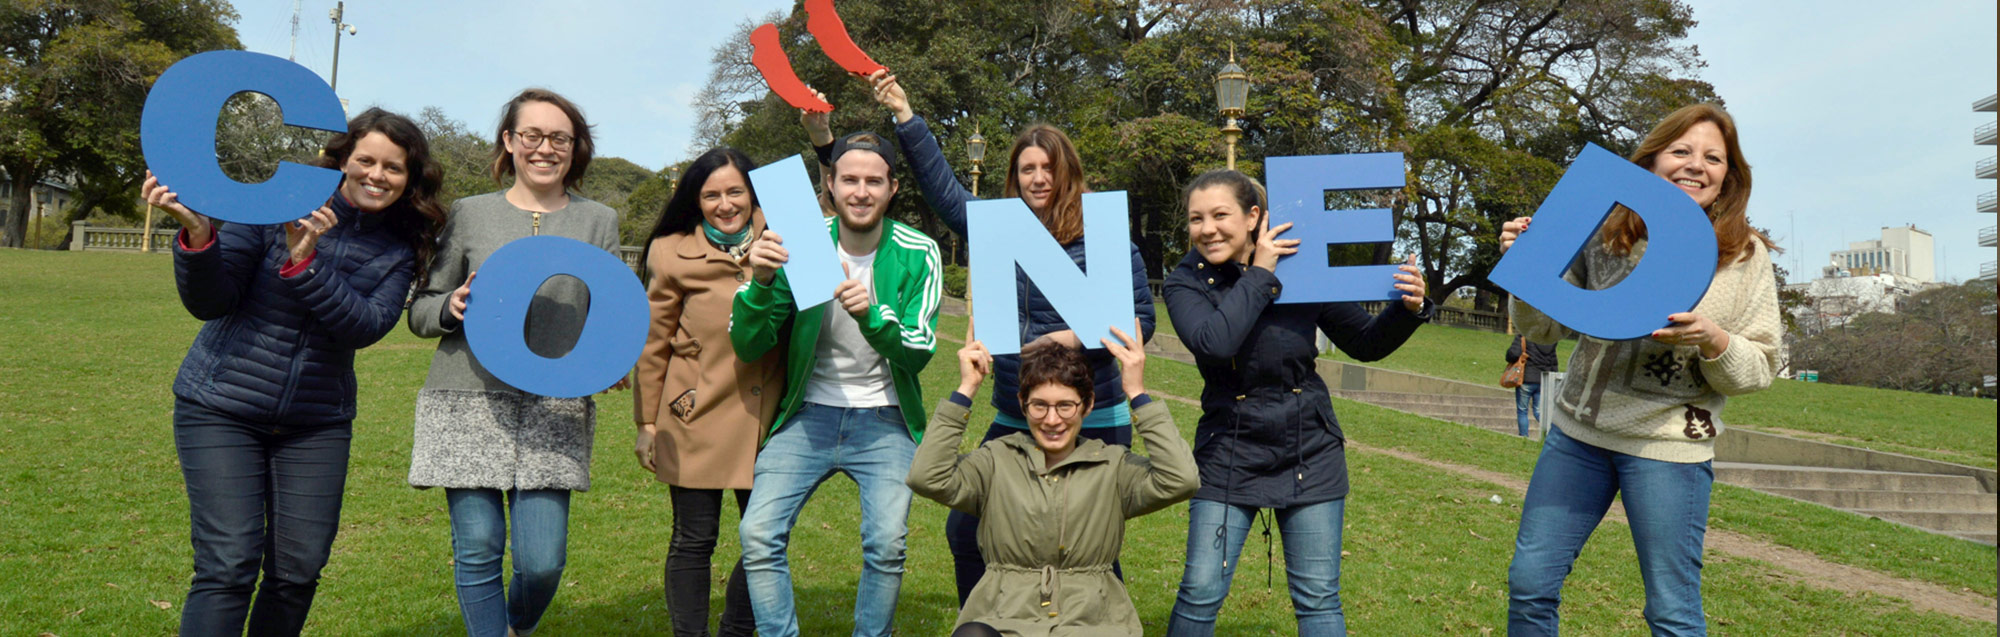 Valutazioni dei nostri ex studenti su COINED Buenos Aires 